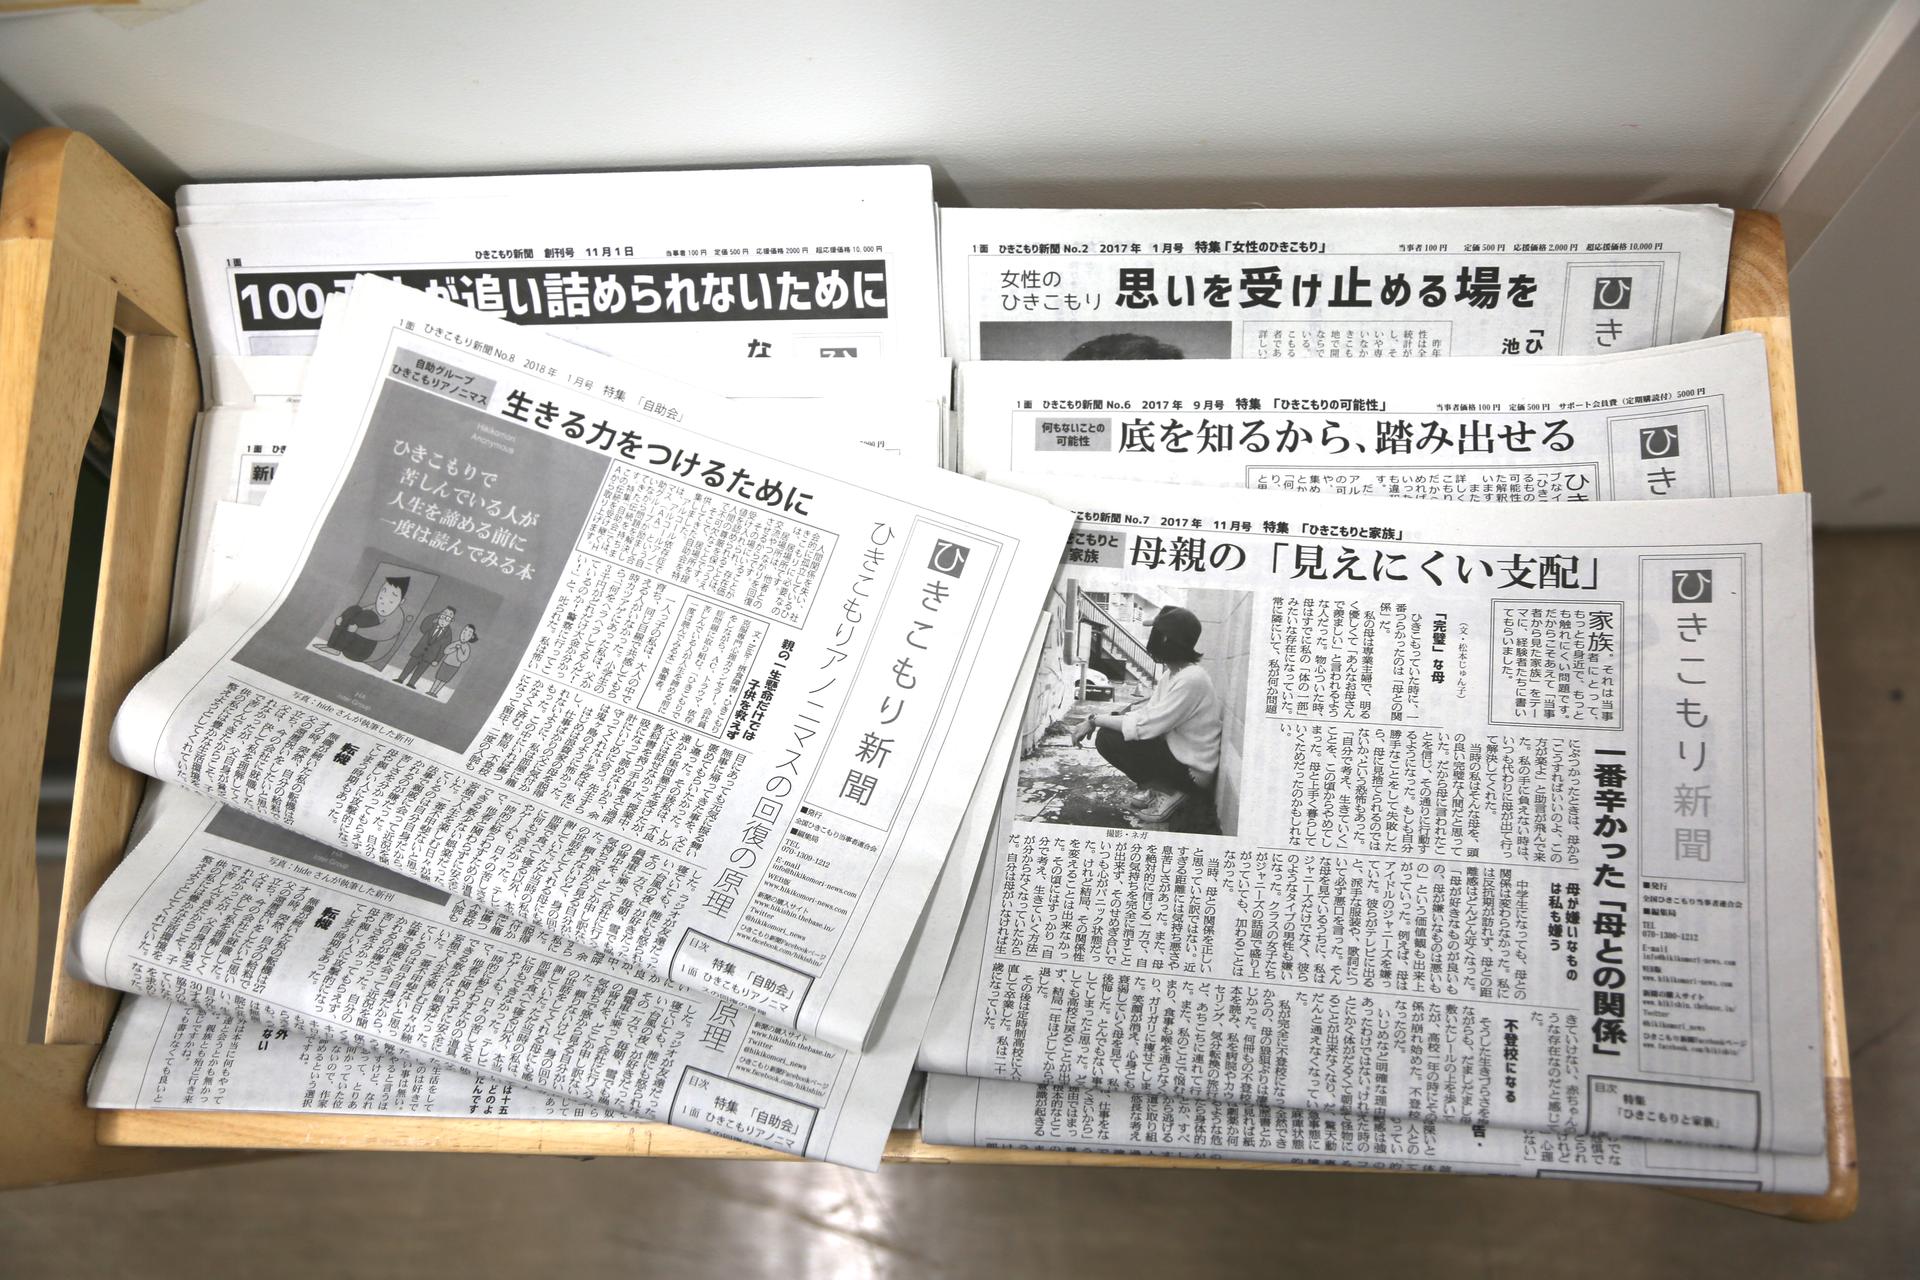 Hikikomori News now has a readership of between 5,000 and 7,000, mostly family members of hikikomori.